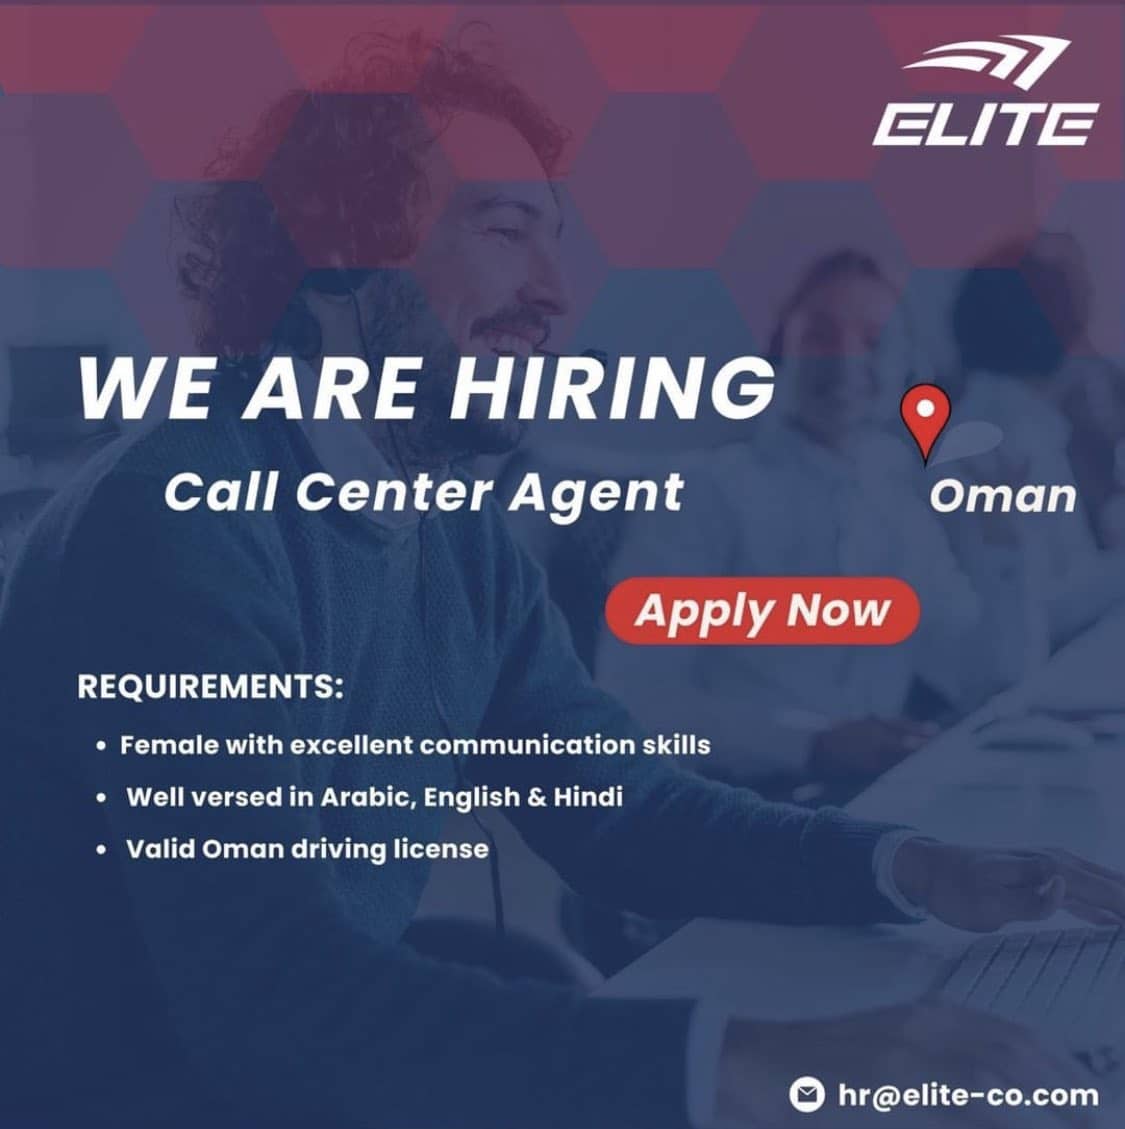 شركة Elite للتوصيل في سلطنة عمان تعلن عن وظائف شاغرة برواتب ومزايا عالية لجميع الجنسيات